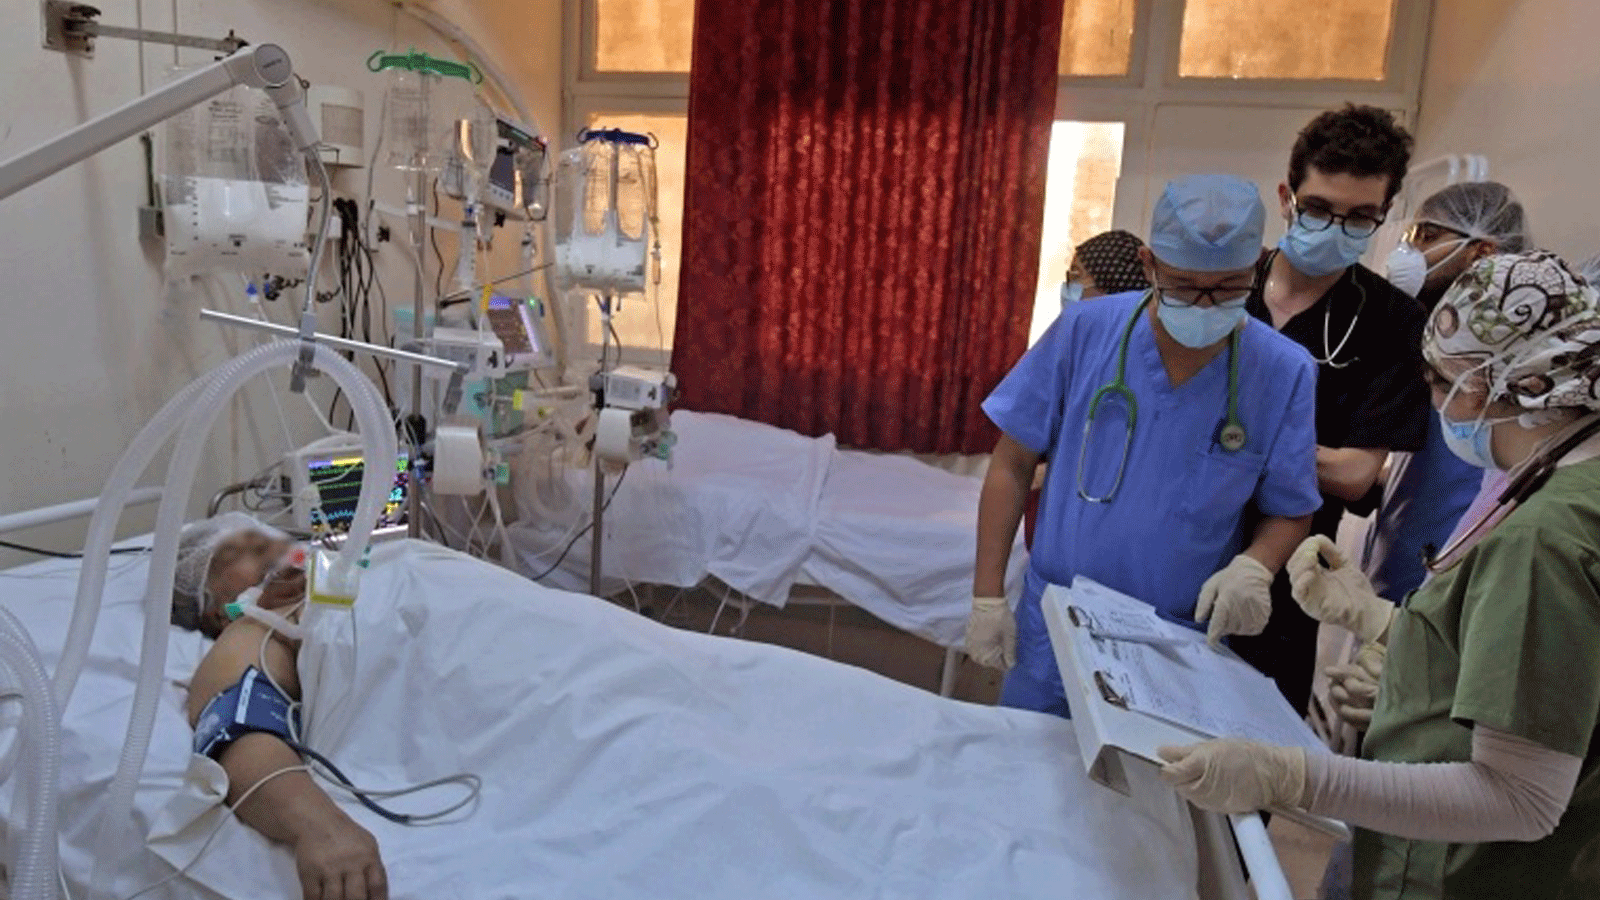 مسعفون تونسيون يعتنون بمرضى في صالة رياضية تم تحويلها إلى منشأة طبية للتعامل مع زيادة حالات الإصابة بفيروس كورونا في مدينة القيروان